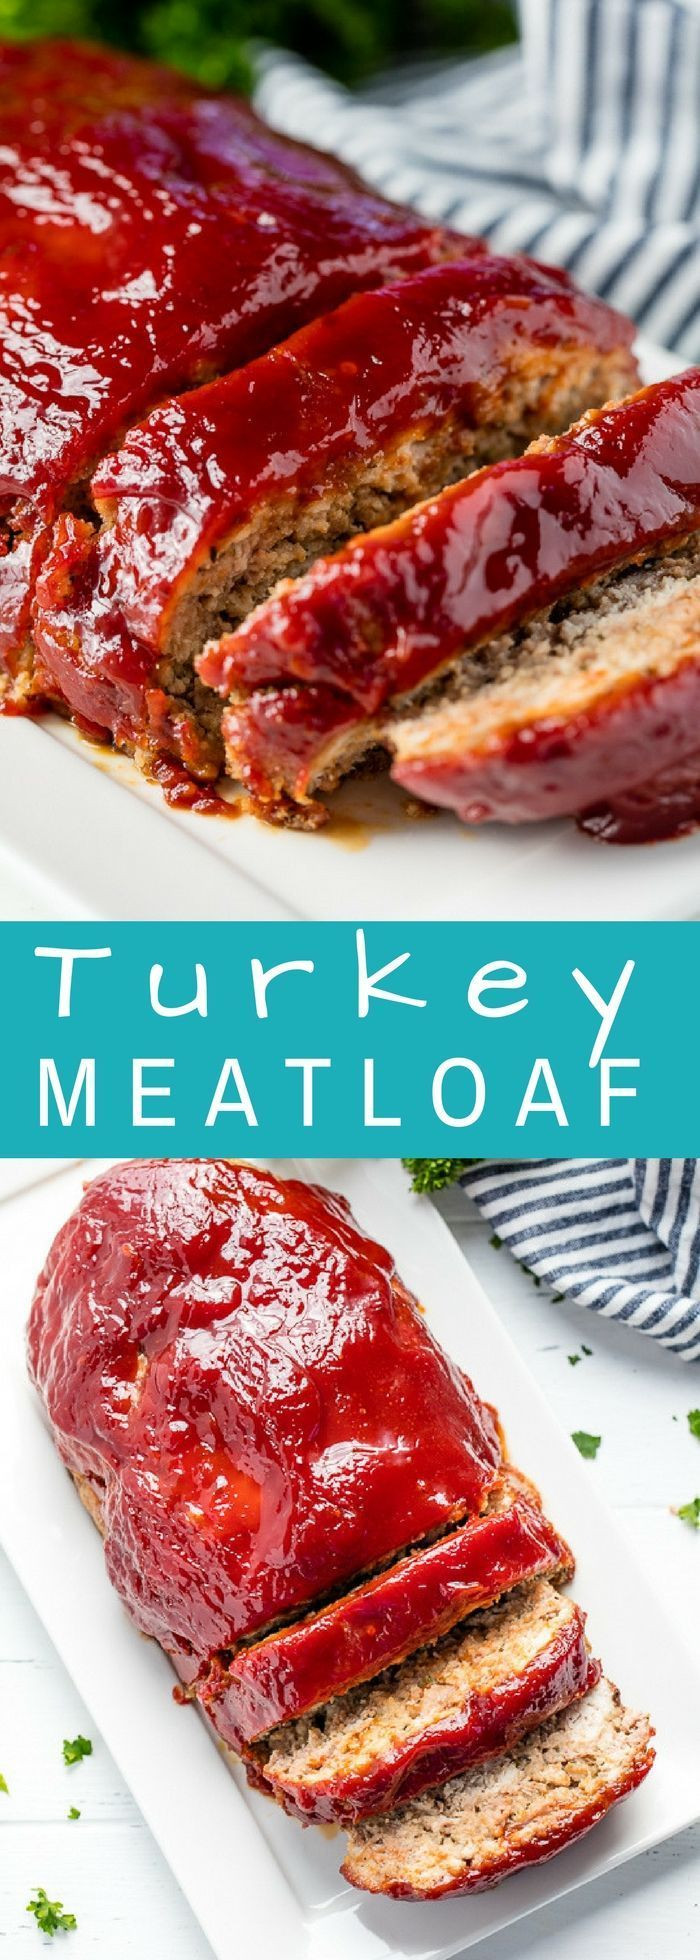 Simple Turkey Meatloaf Recipe
 350 Easy Healthy Meatloaf Recipes BEEF TURKEY VEGGIES